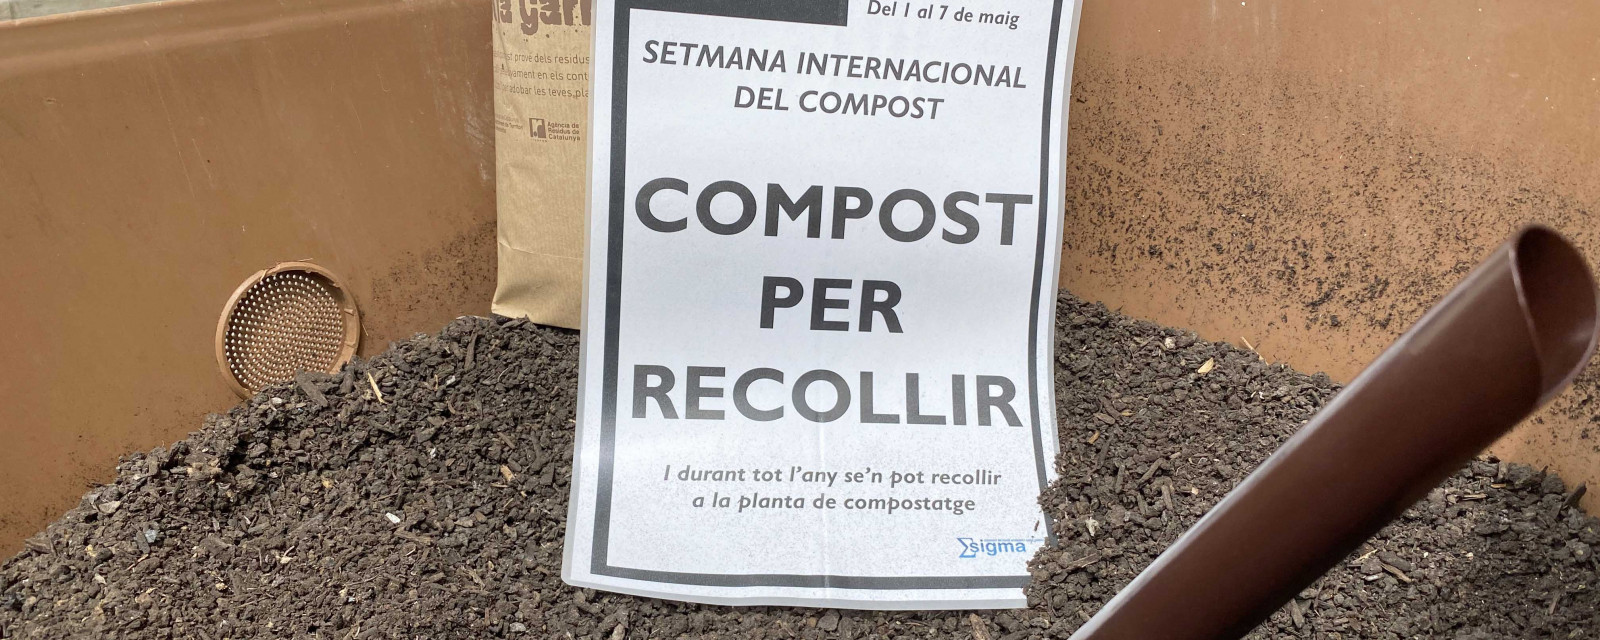 Setmana Compost_4_